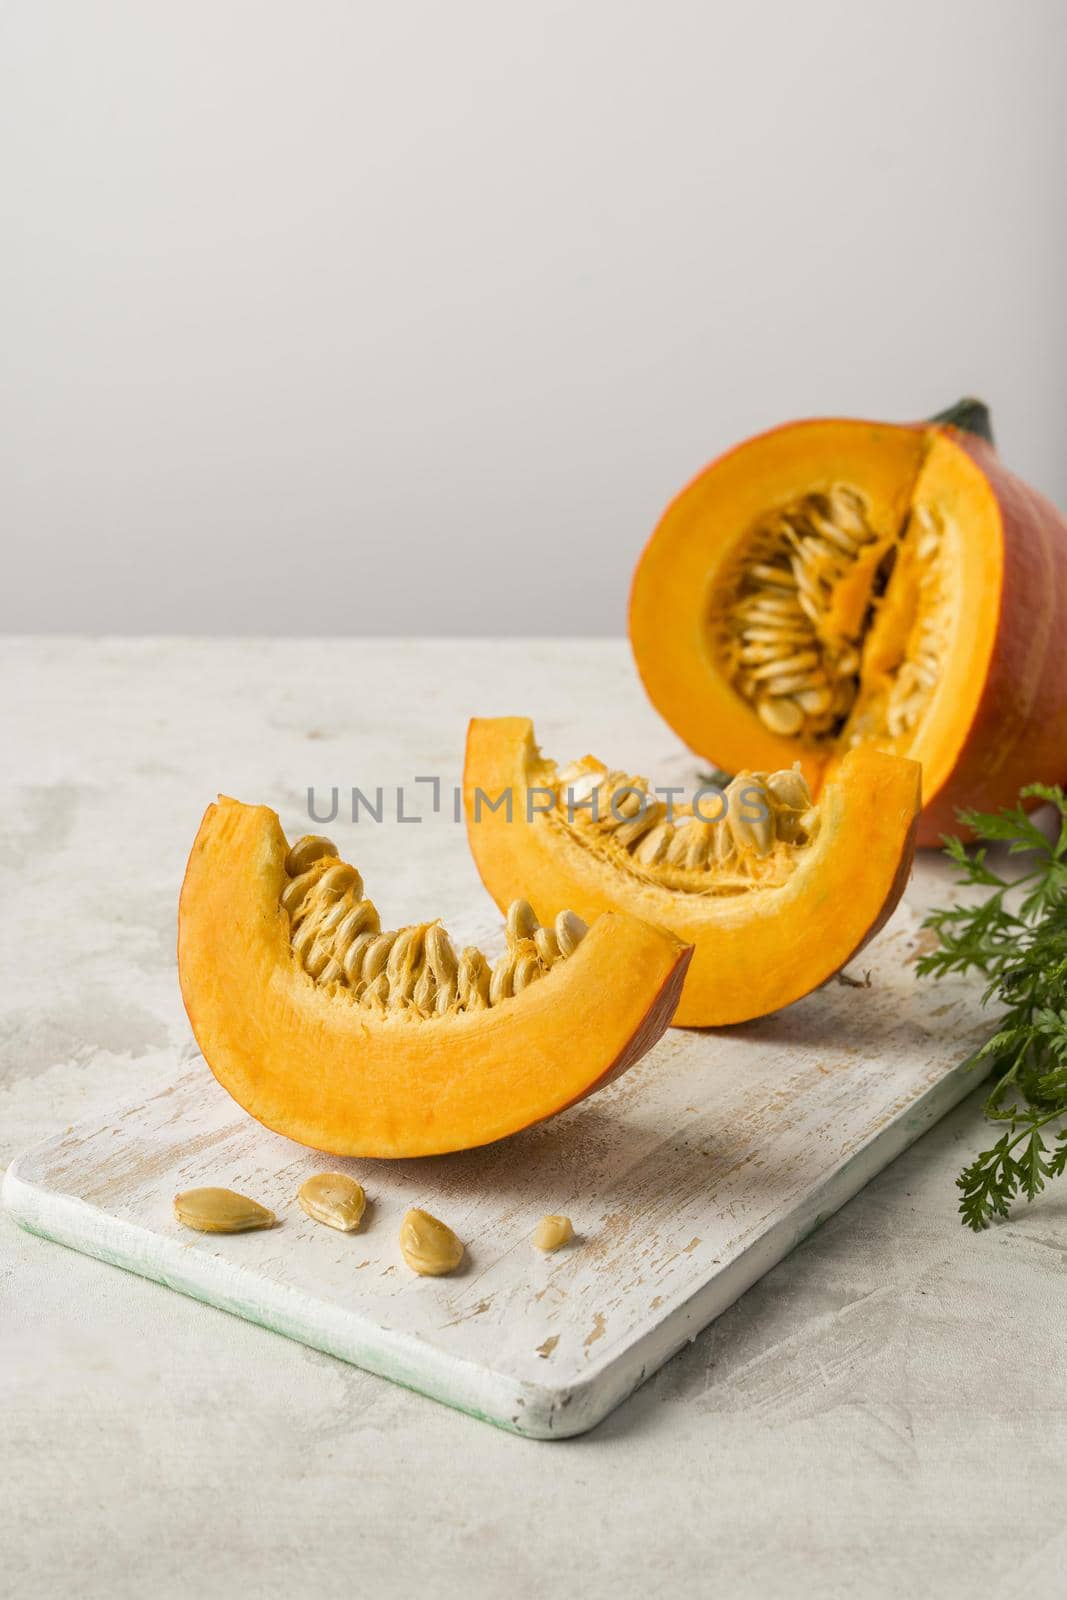 (1)pumpkin slices with seeds arrangement